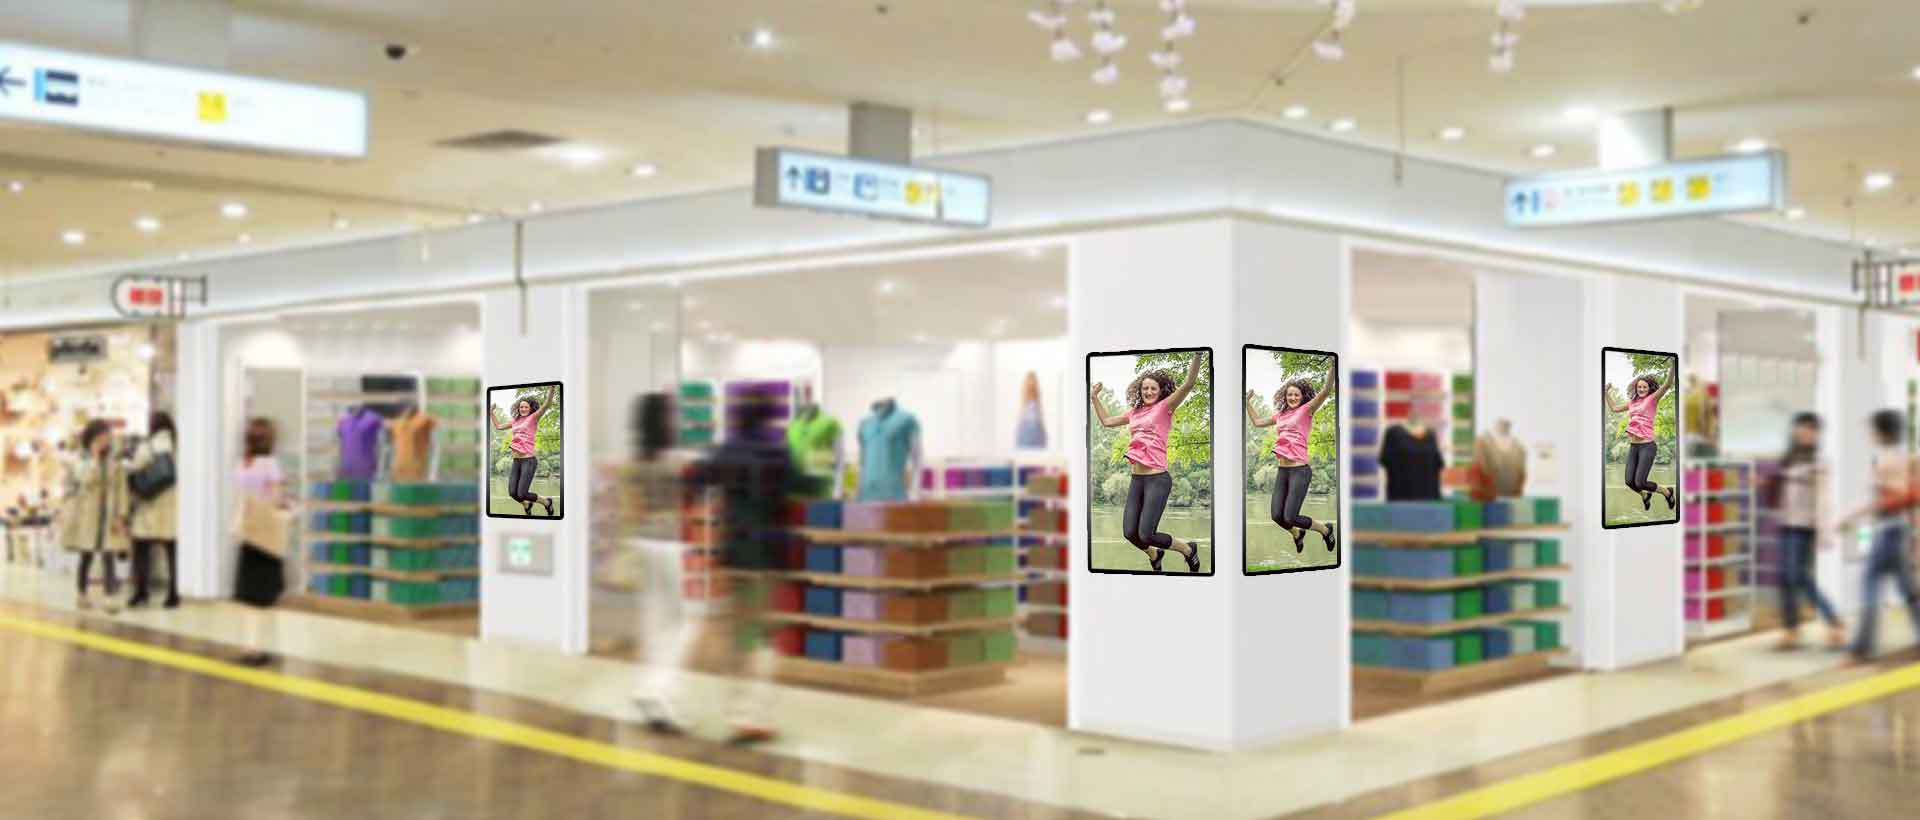 店舗入り口に43型液晶ガラストップデジタルサイネージを設置したイメージ画像